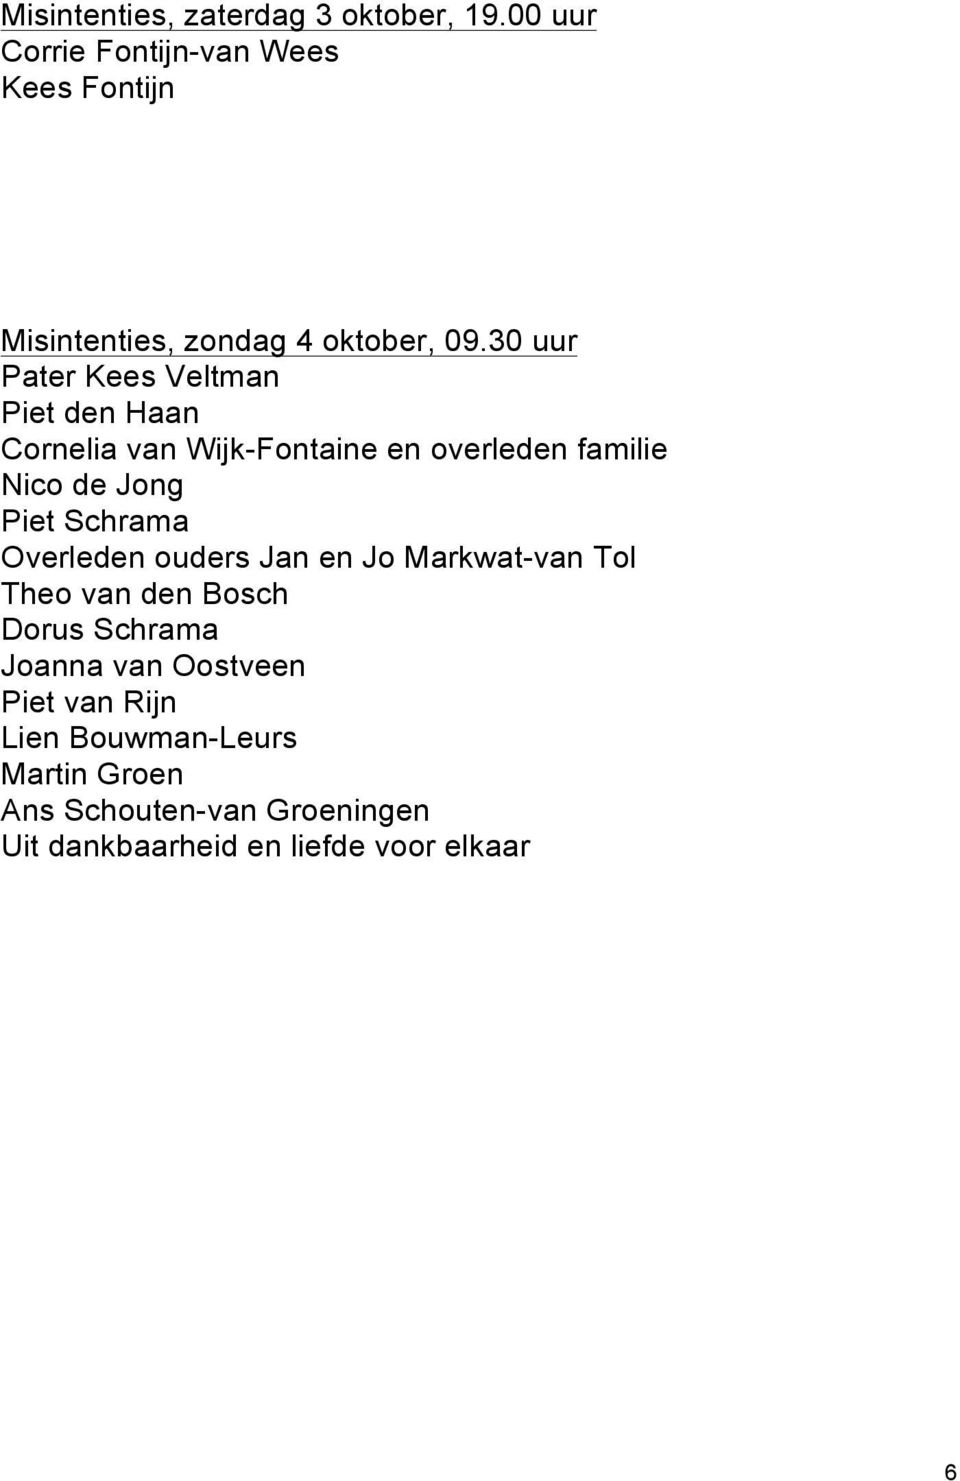 30 uur Pater Kees Veltman Piet den Haan Cornelia van Wijk-Fontaine en overleden familie Nico de Jong Piet